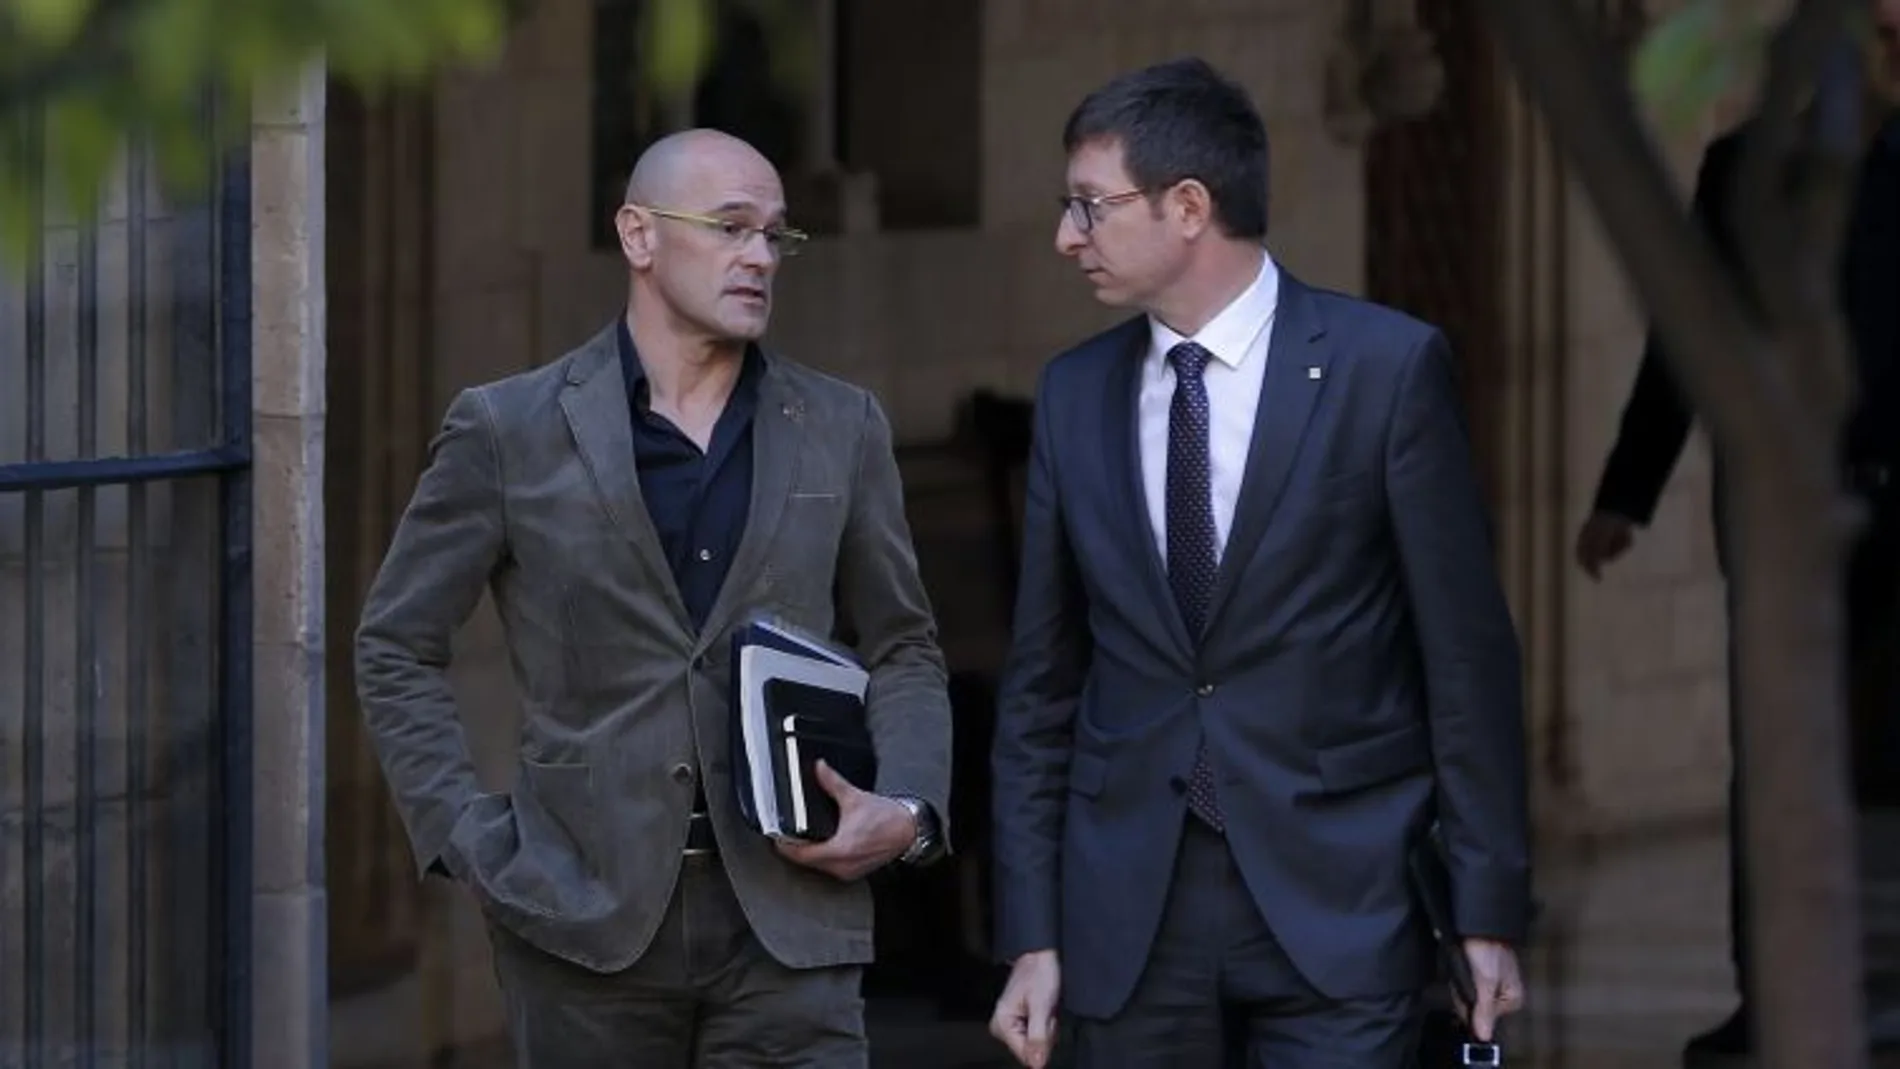 Los consellers de Exteriores y Justicia de la Generalitat, Raul Romeva (i) y Carles Mundó (d), respectivamente, a la llegada a la reunión semanal celebrada hoy en el Palau de la Generalitat